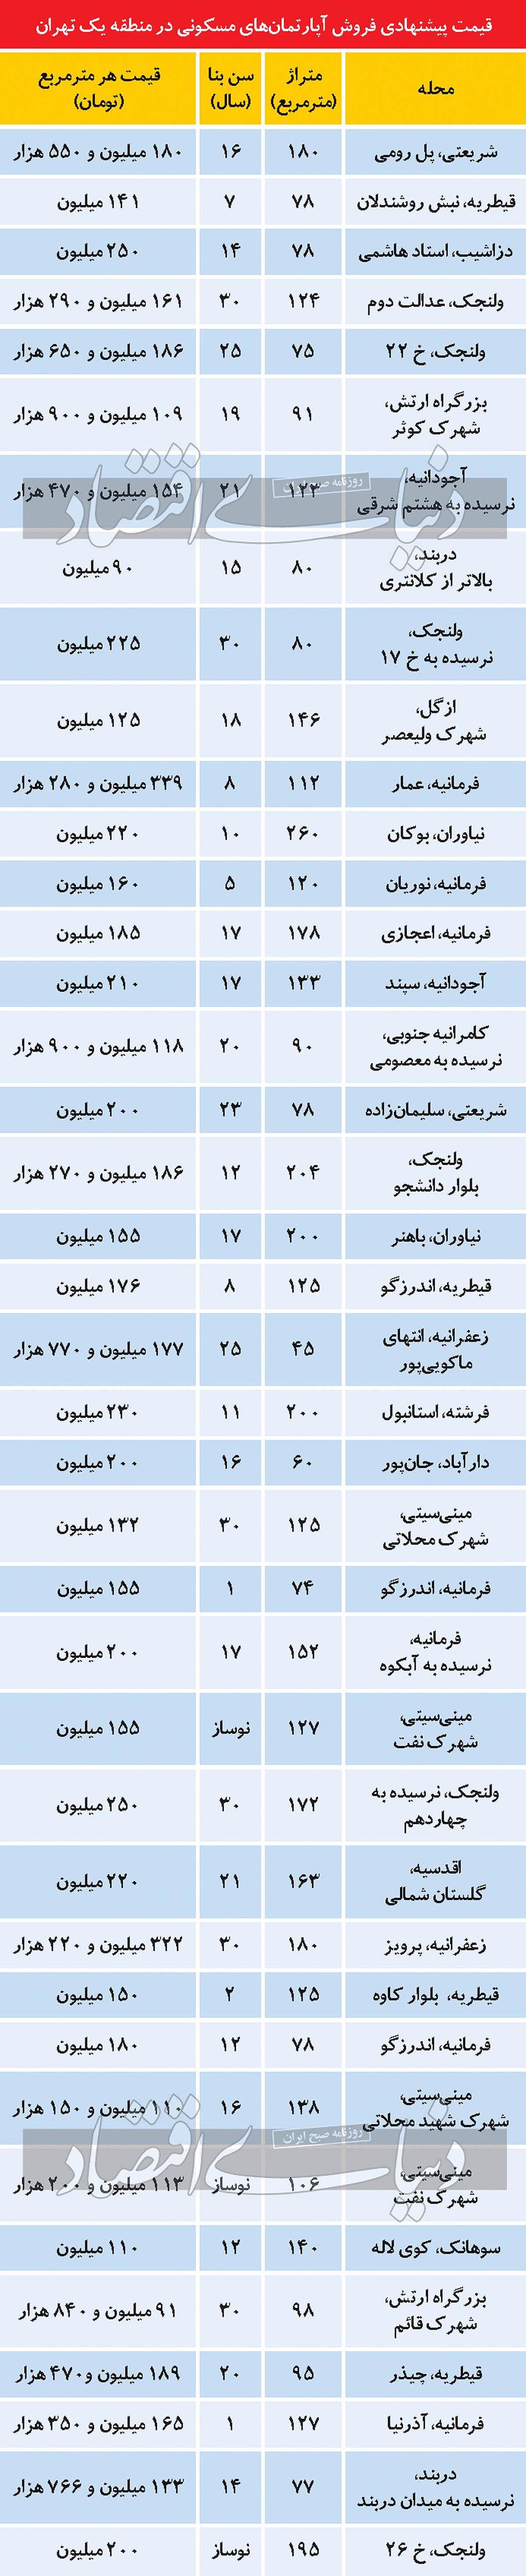 جدول قیمت خانه در منطقه یک تهران